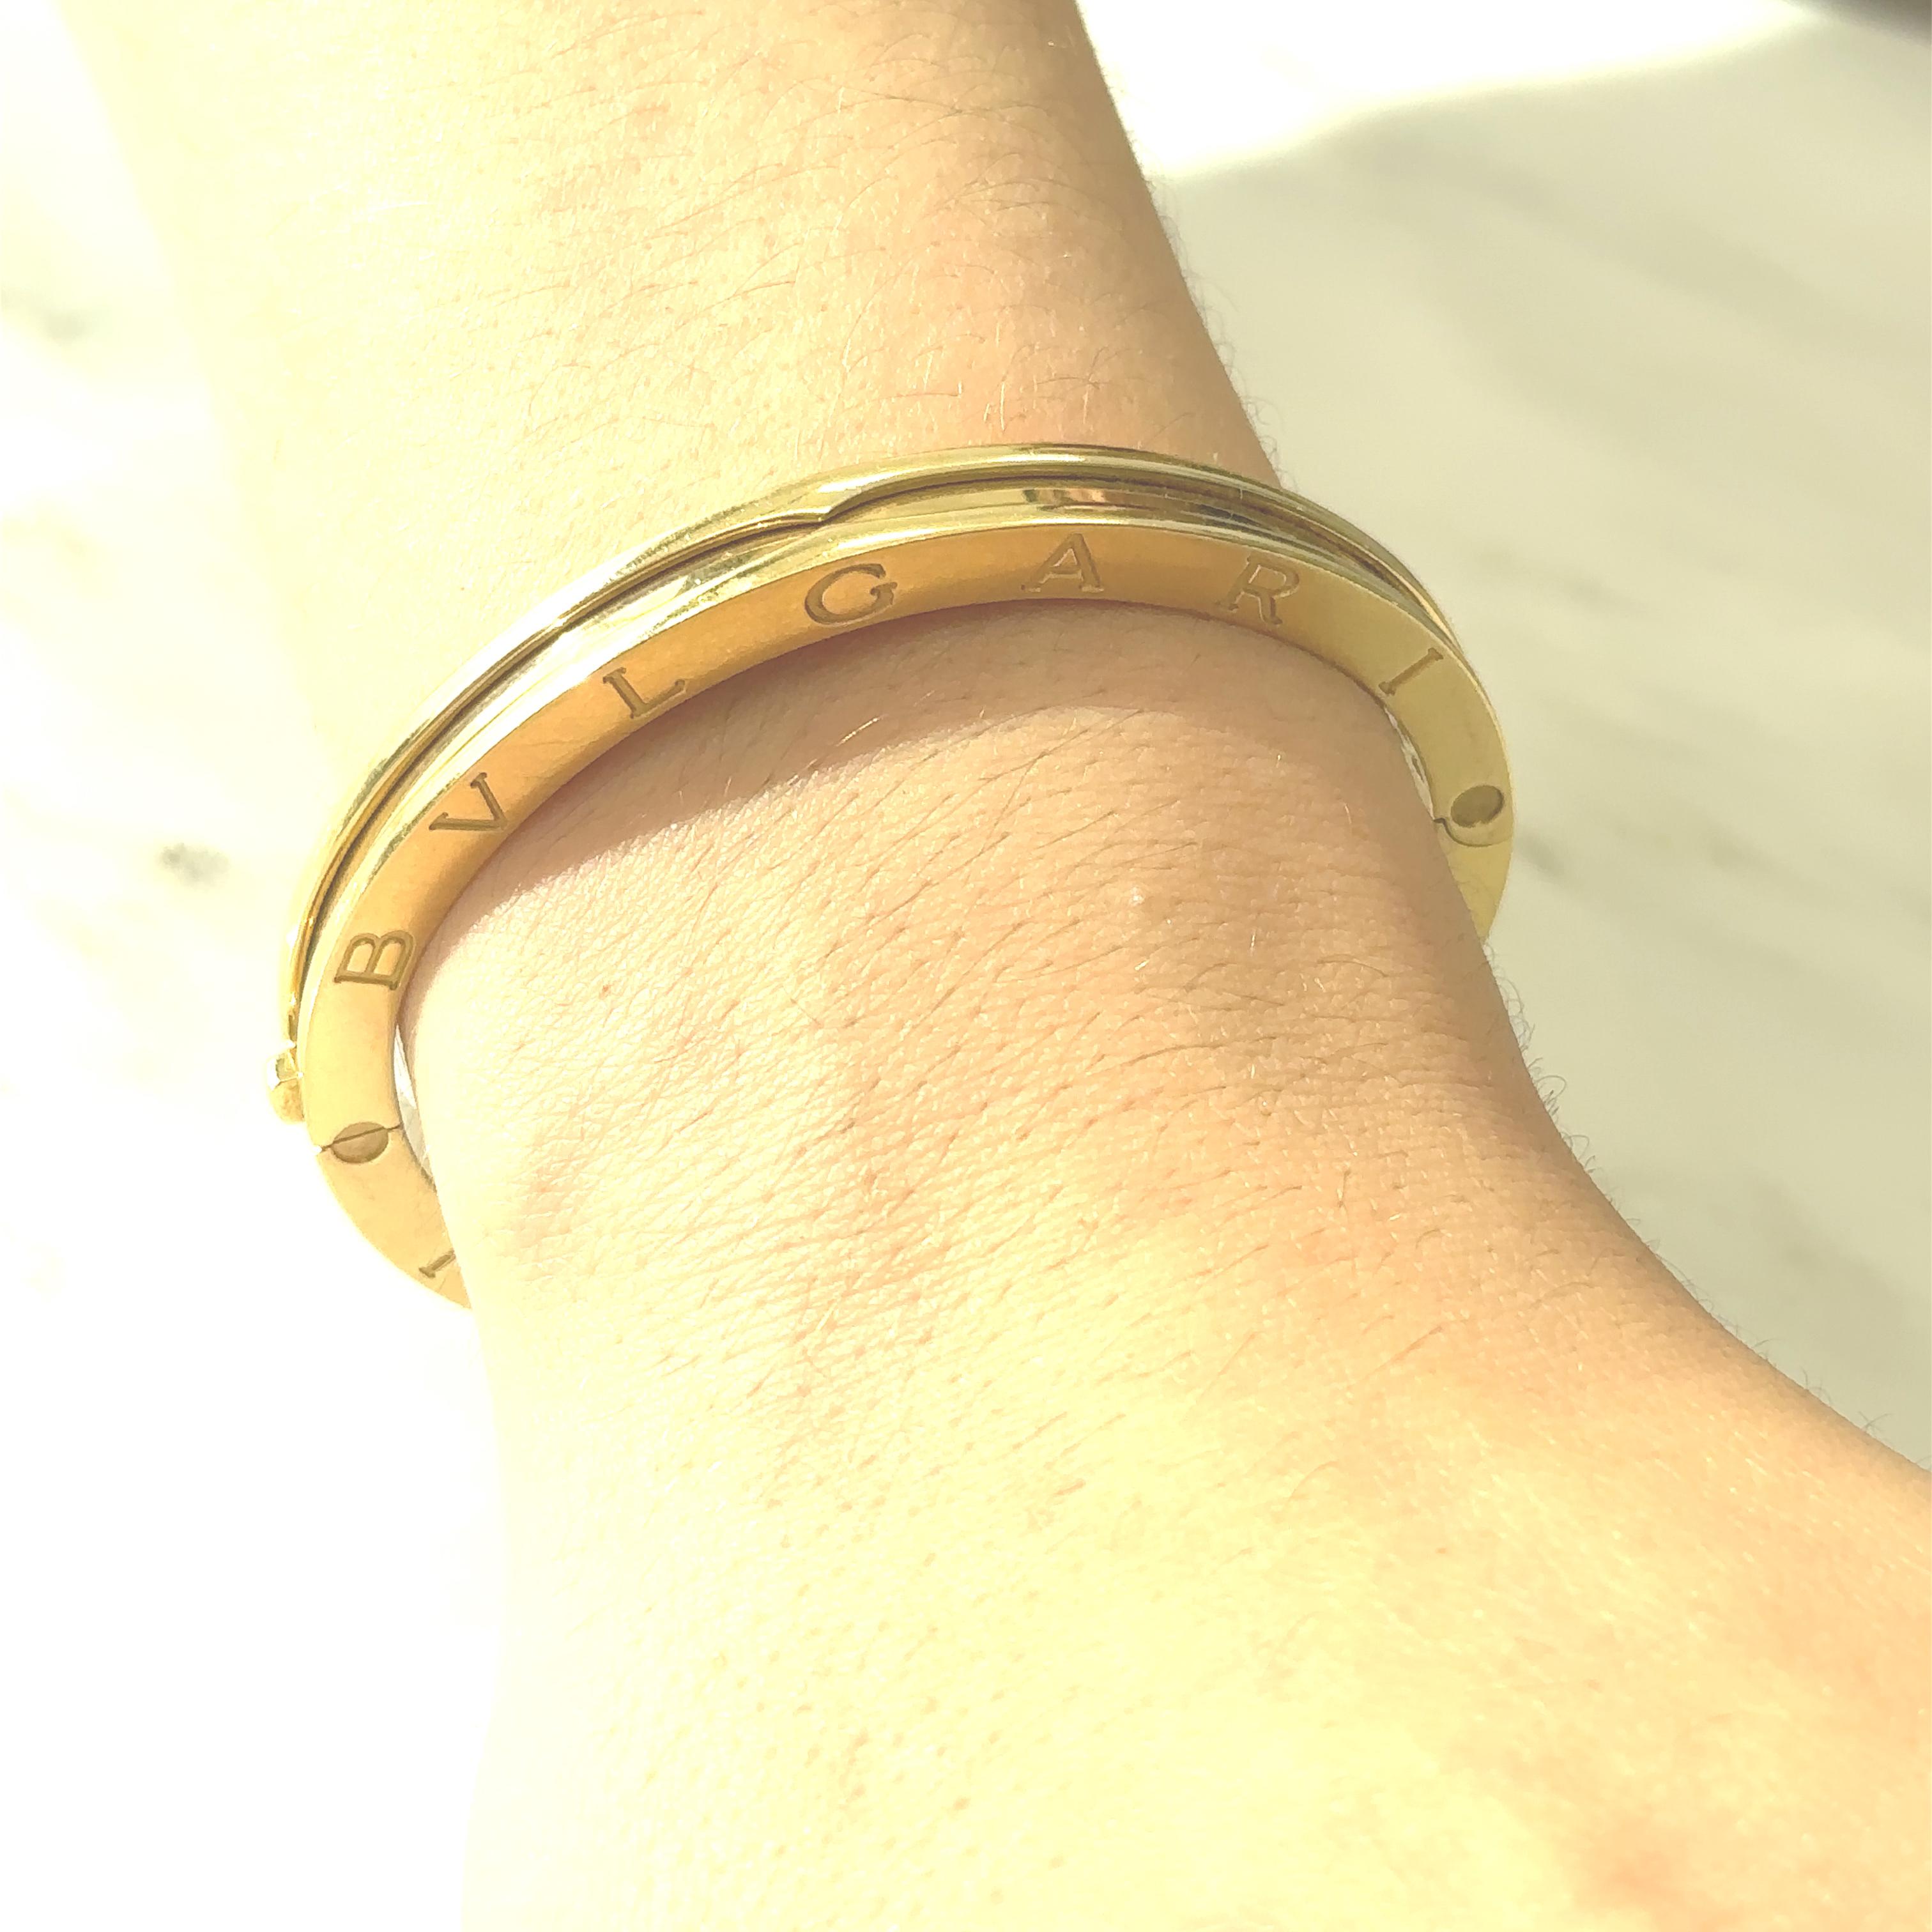 Diese Bulgari Gold 'B.Zero1' Armreif Armband ist in 18kt Gold signiert Bulgari. Hergestellt in Italien. Ungefähr 47 Gramm. Innenumfang 6,5 Zoll. 

Dieser Armreif B.Zero1 wurde von Bulgari nicht mehr in Gelbgold hergestellt, was ihn zu einem seltenen